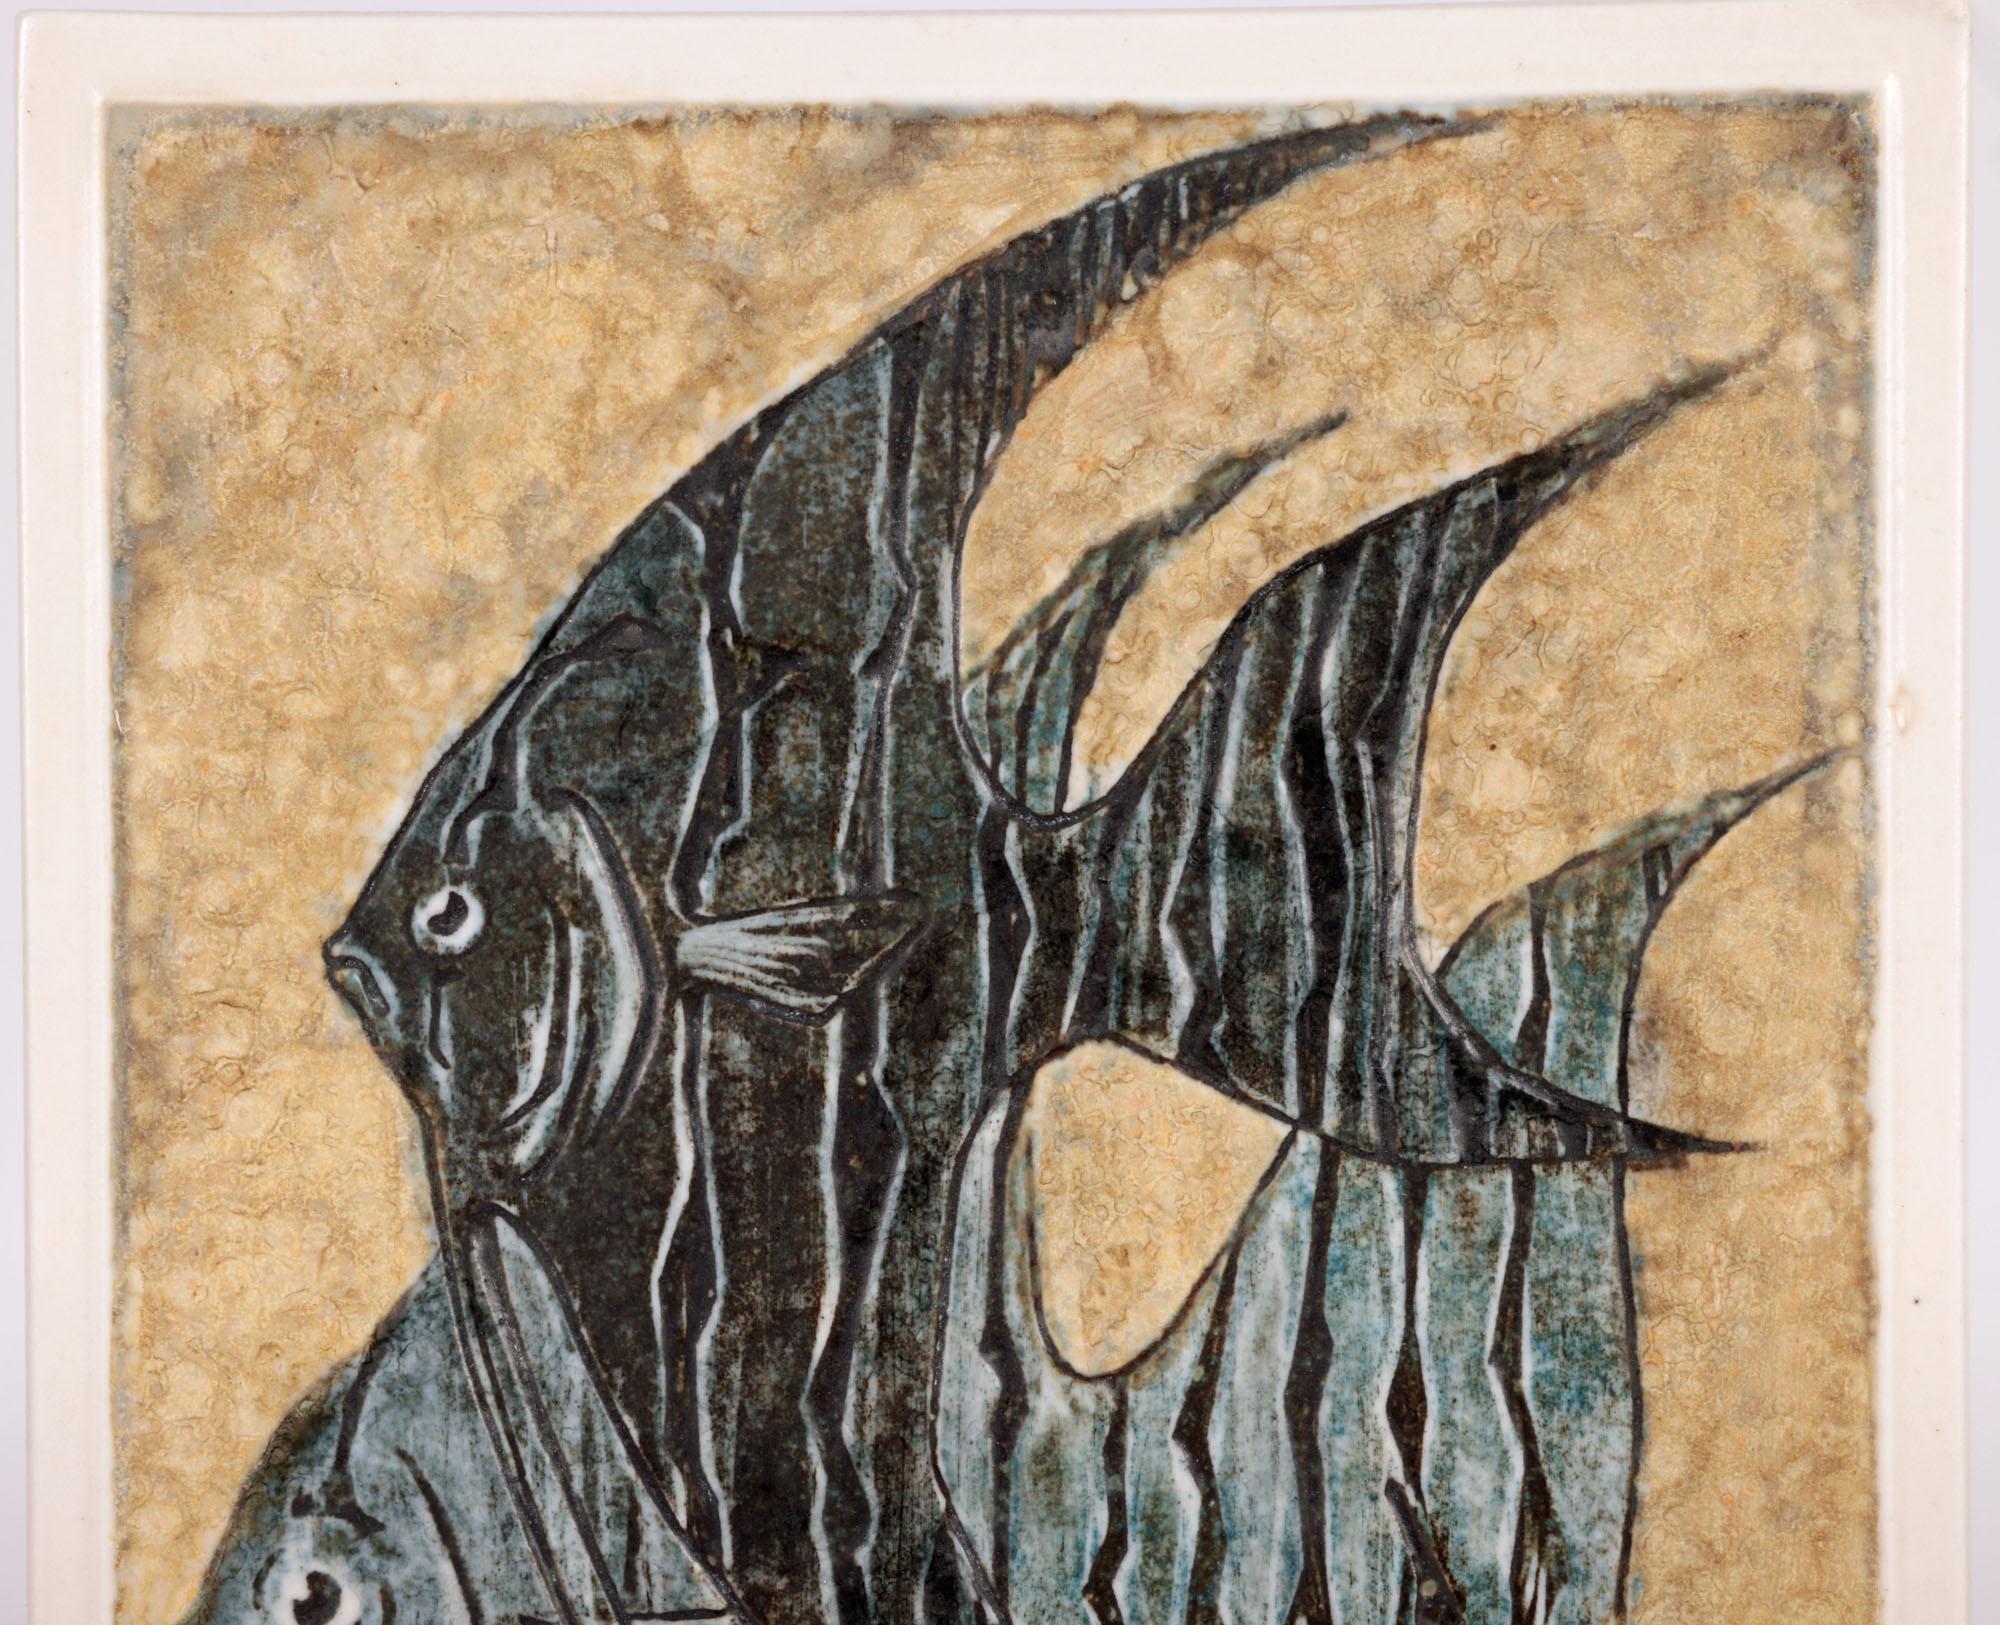 Superbe plaque murale ou carreau en porcelaine allemande du milieu du siècle, décorée d'un poisson ange par le célèbre fabricant Meissen et datant d'environ 1950/60. La plaque est de forme rectangulaire haute, le centre étant encadré par une bordure